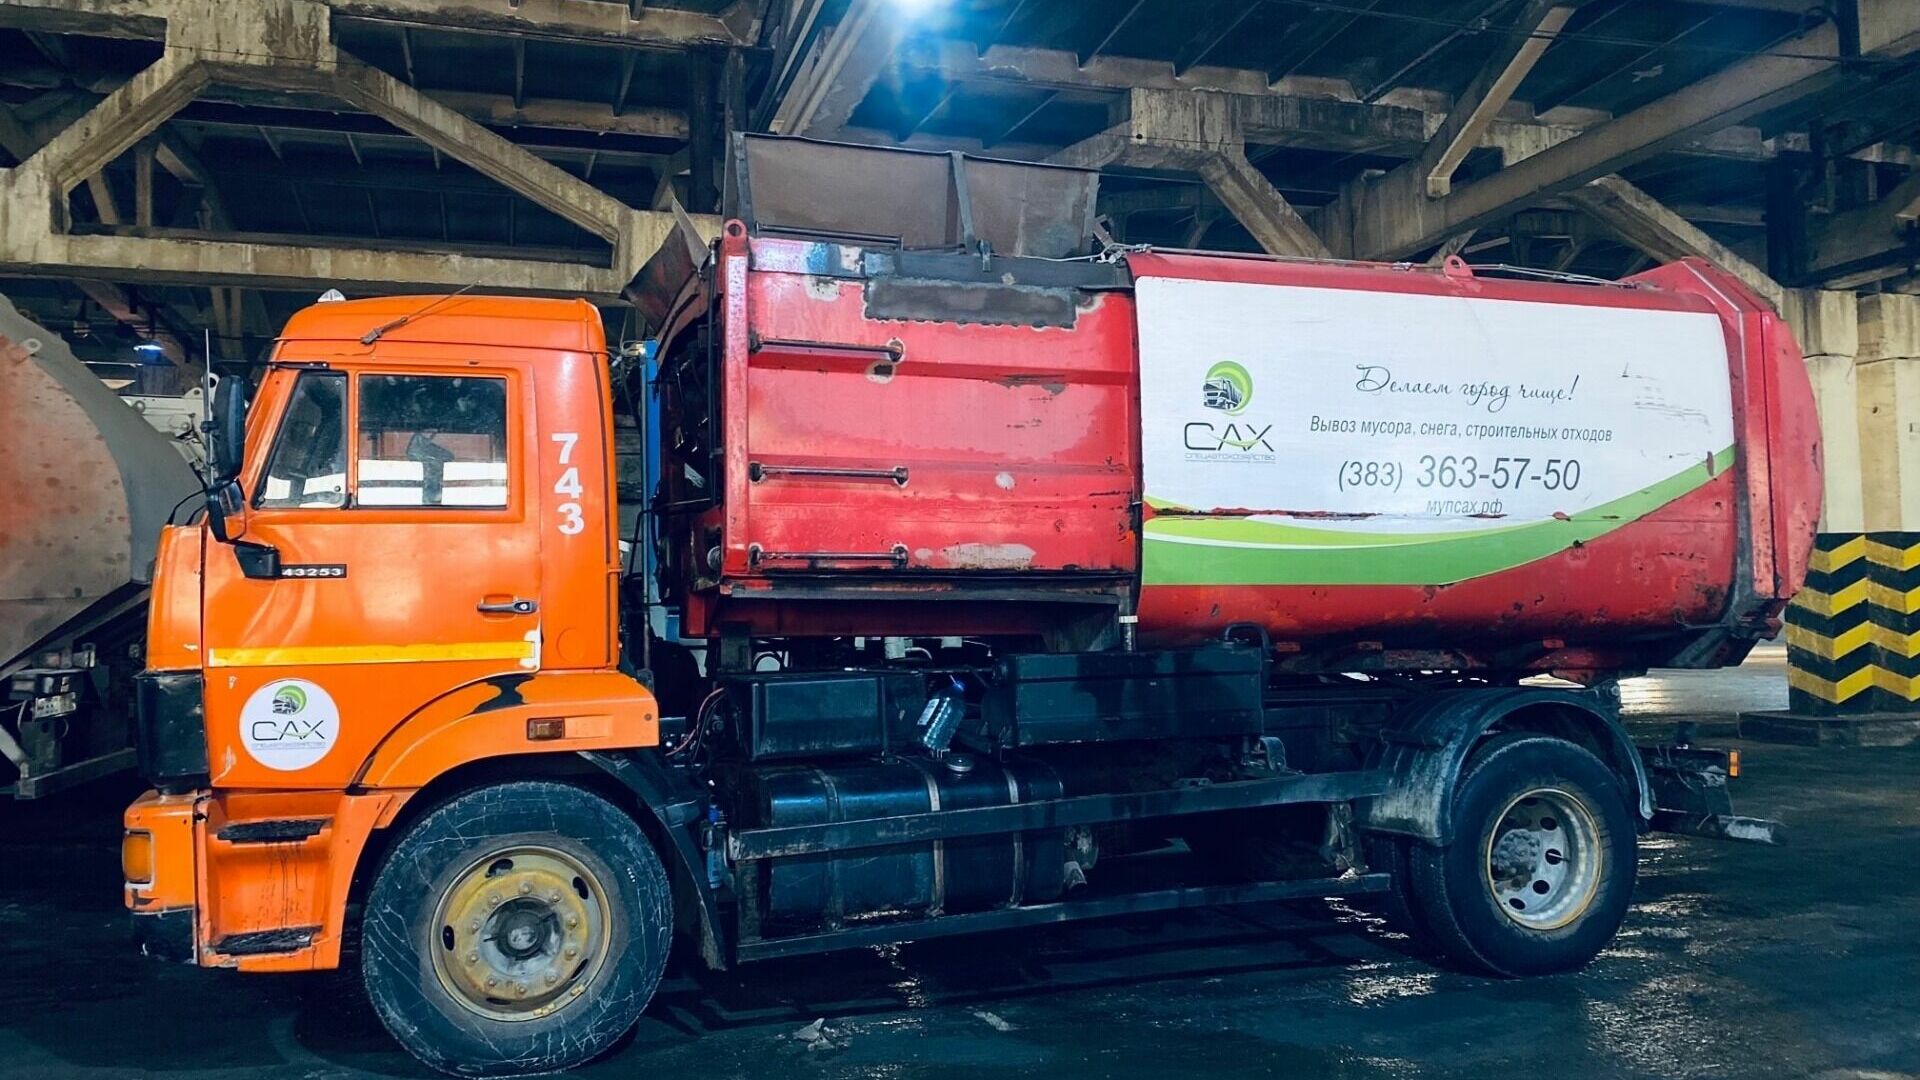 МУП "САХ"  - крупнейшая компания по вывозу мусора в Новосиирской области